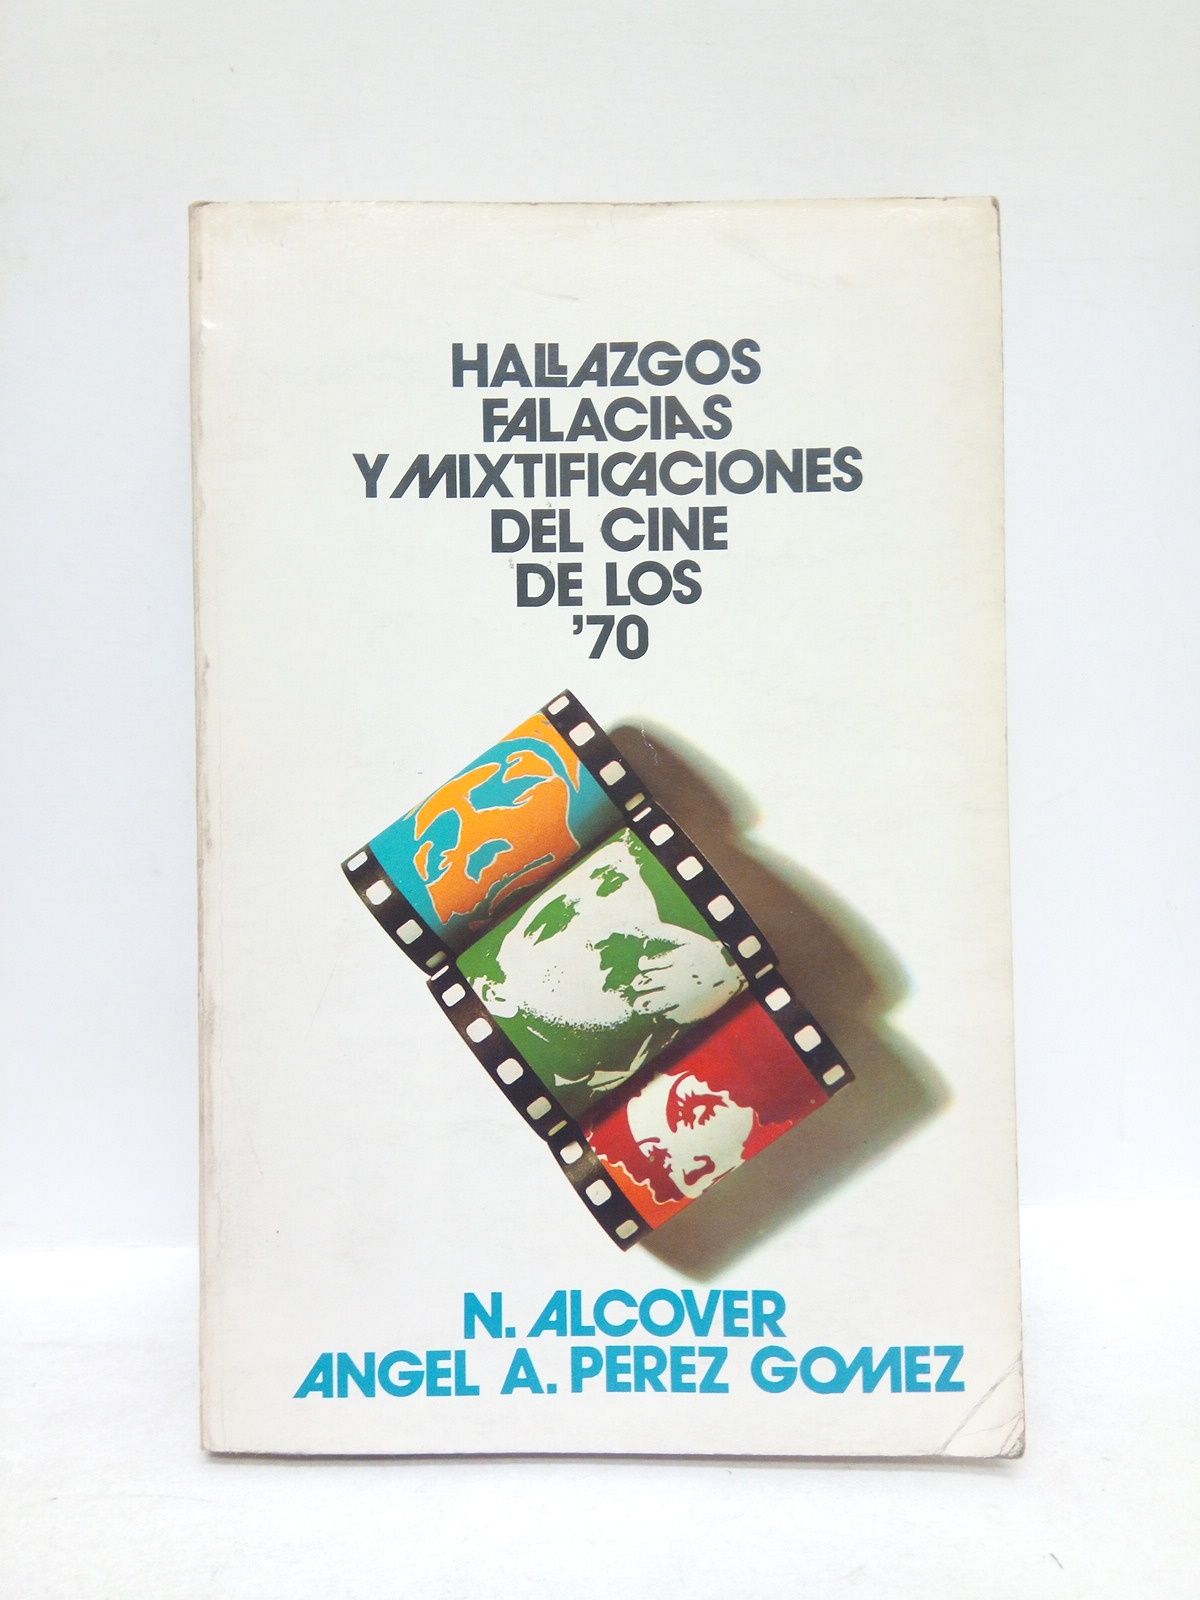 ALCOVER, N. y Angel A. Perez Gomez - Hallazgos, falacias y mixtificaciones del cine de los 70